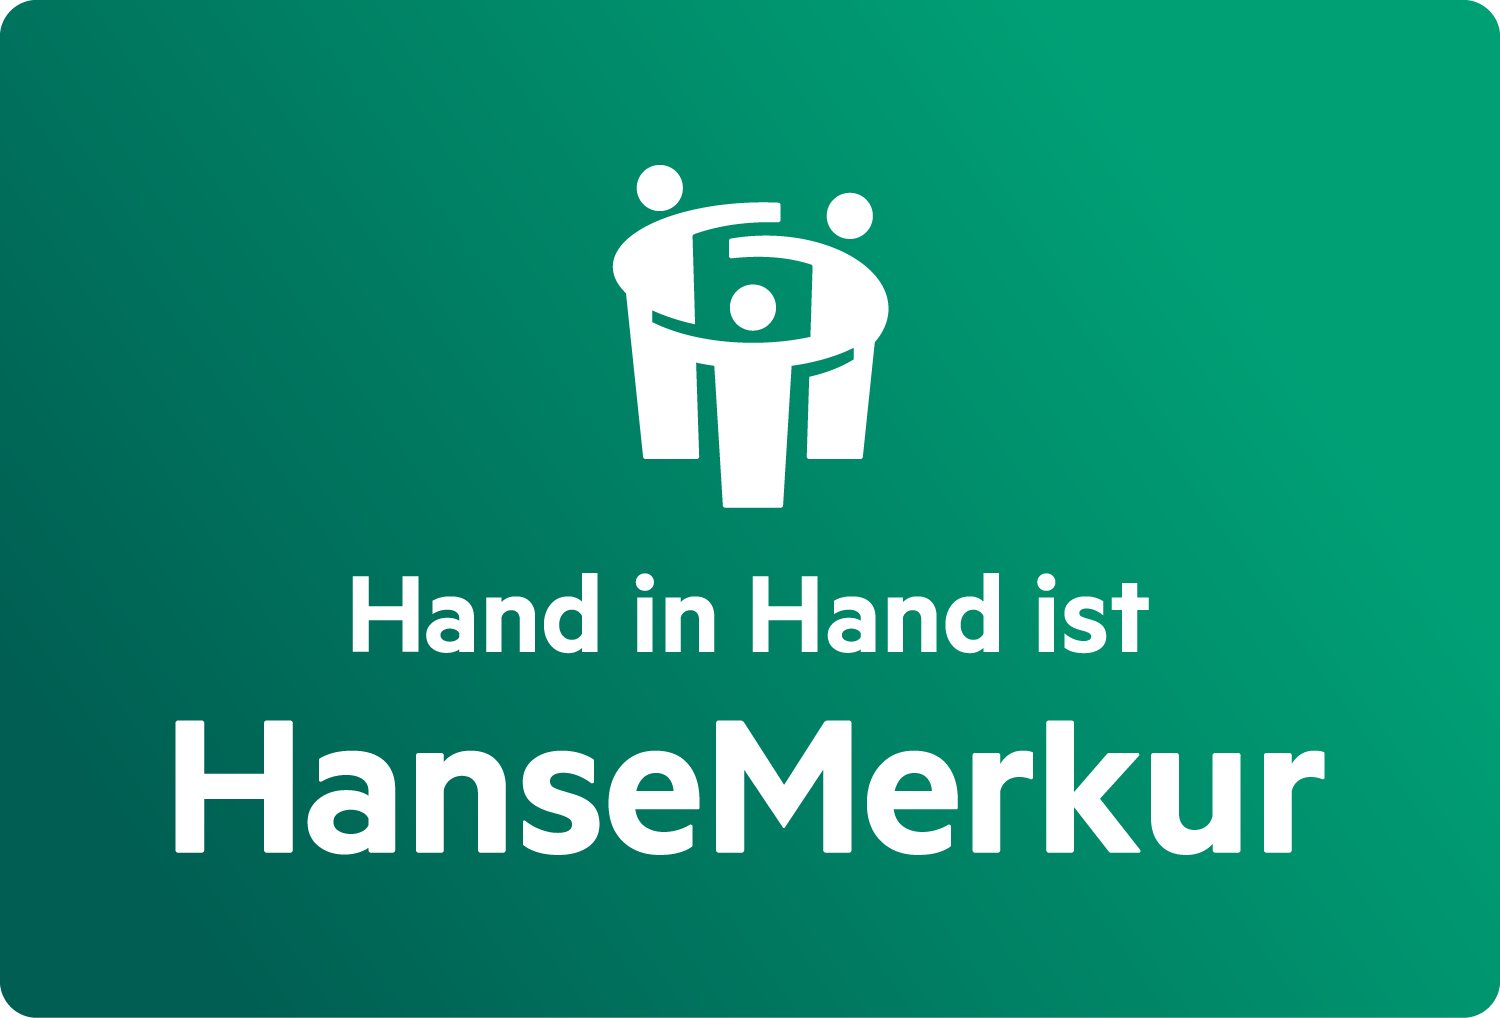 Hand in Hand ist HanseMerkur!